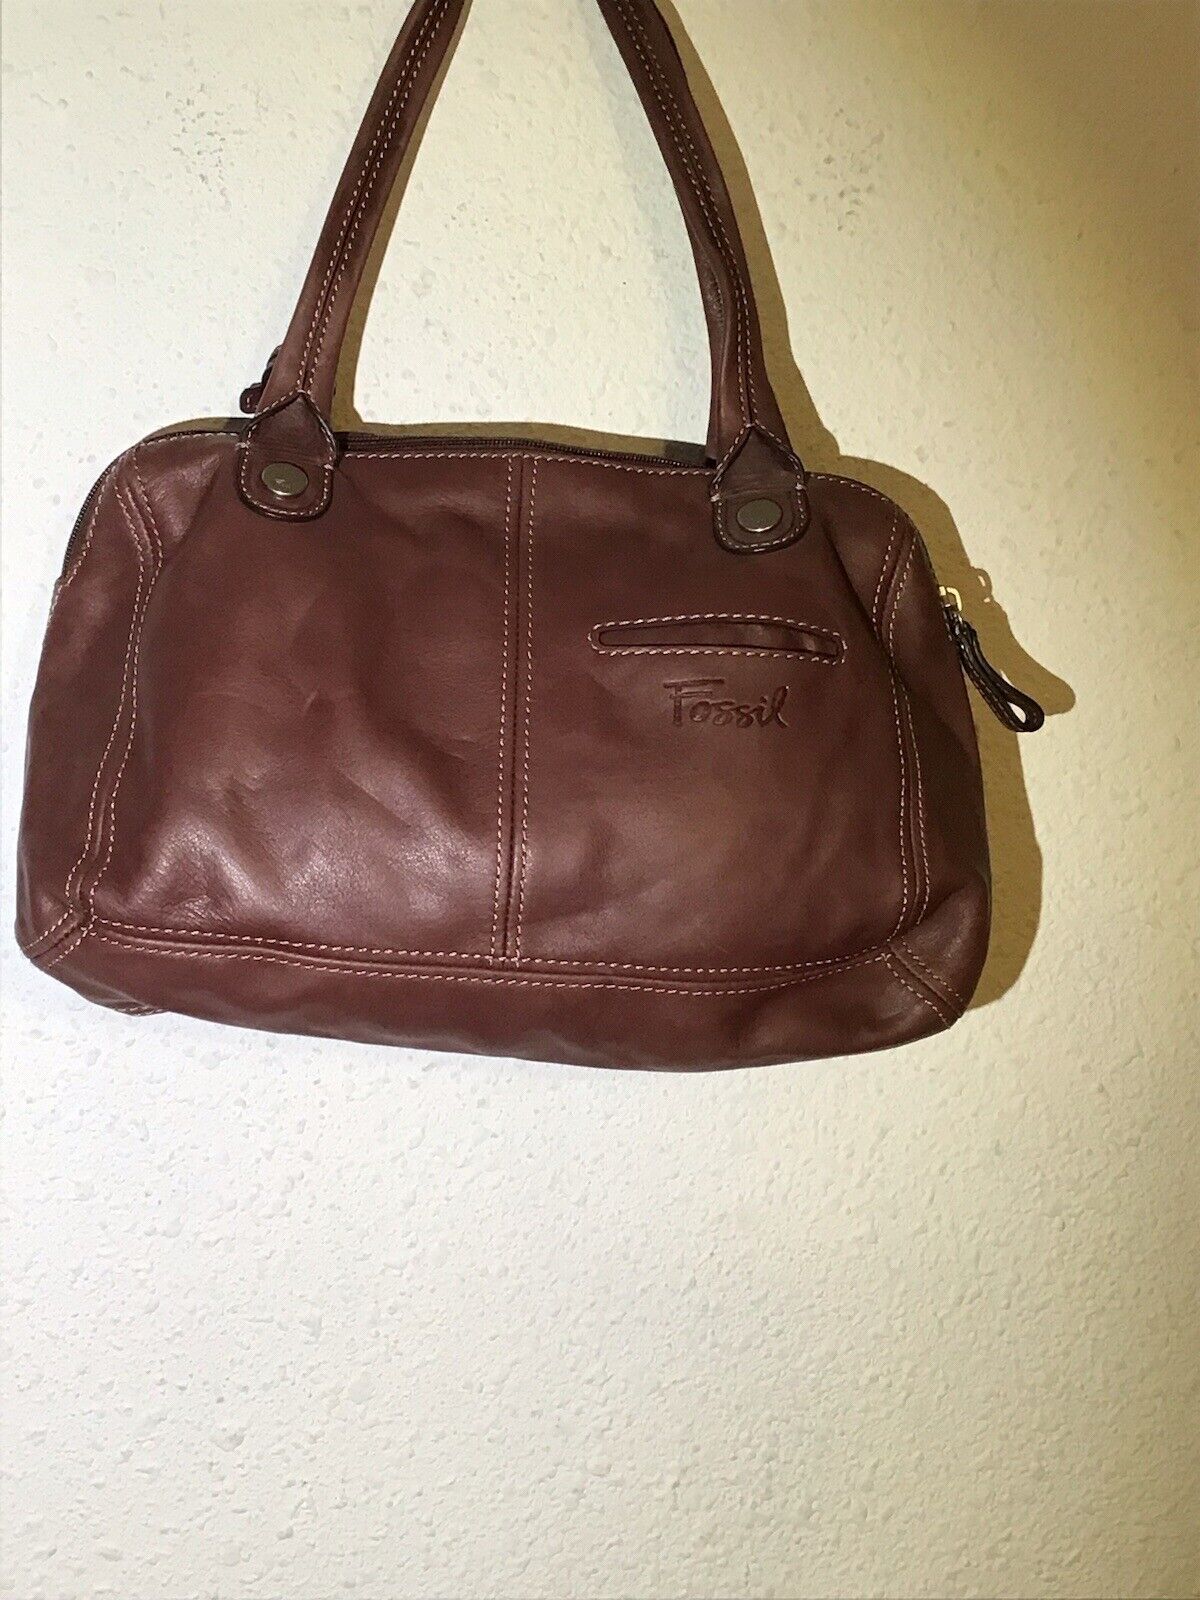 Fossil Brown Leather Shoulder Bag - image 4